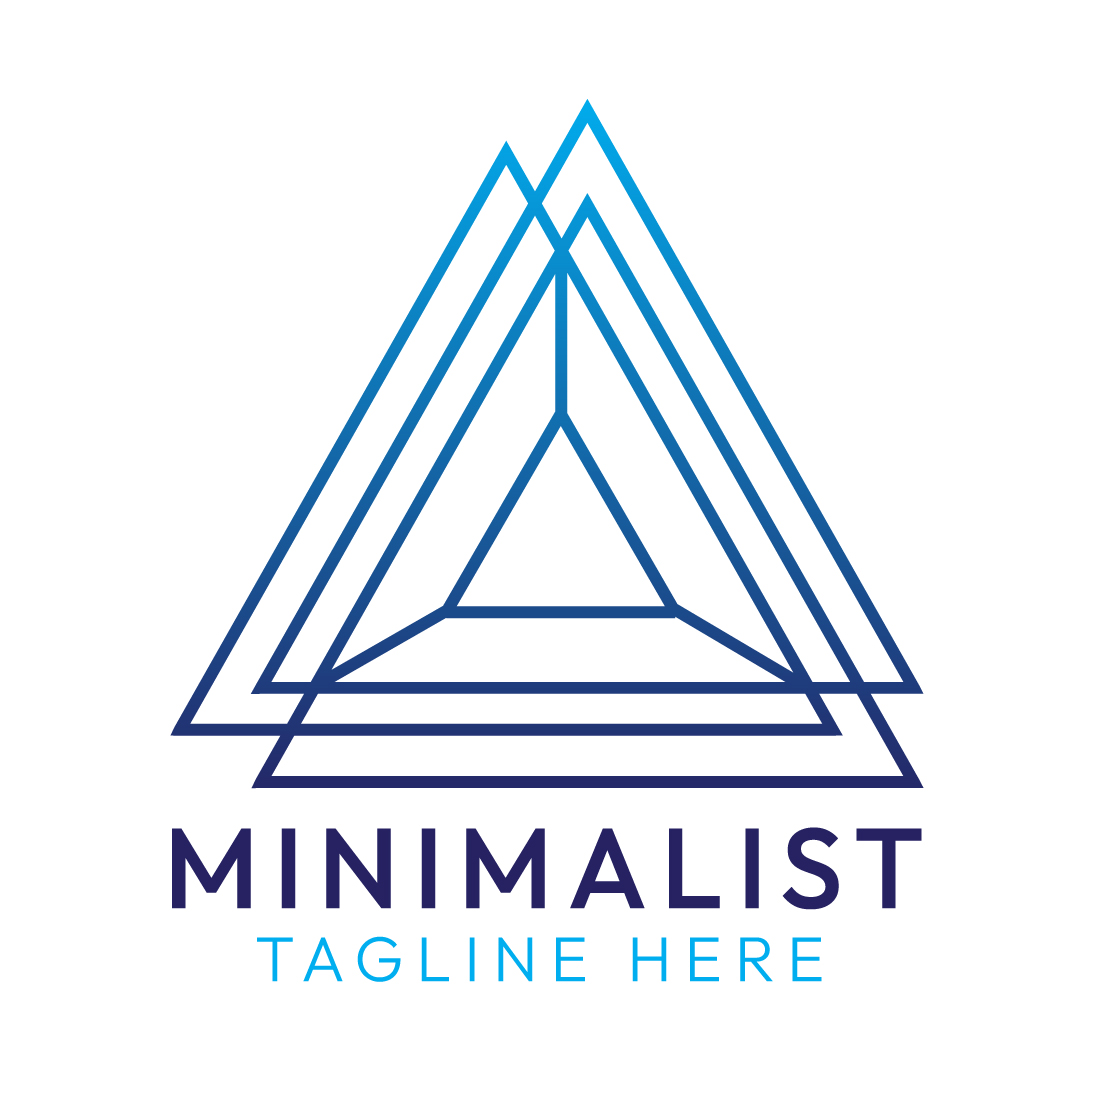 Minimalist Triangle Logo Design Bundle for Brands | Master Bundle preview image.